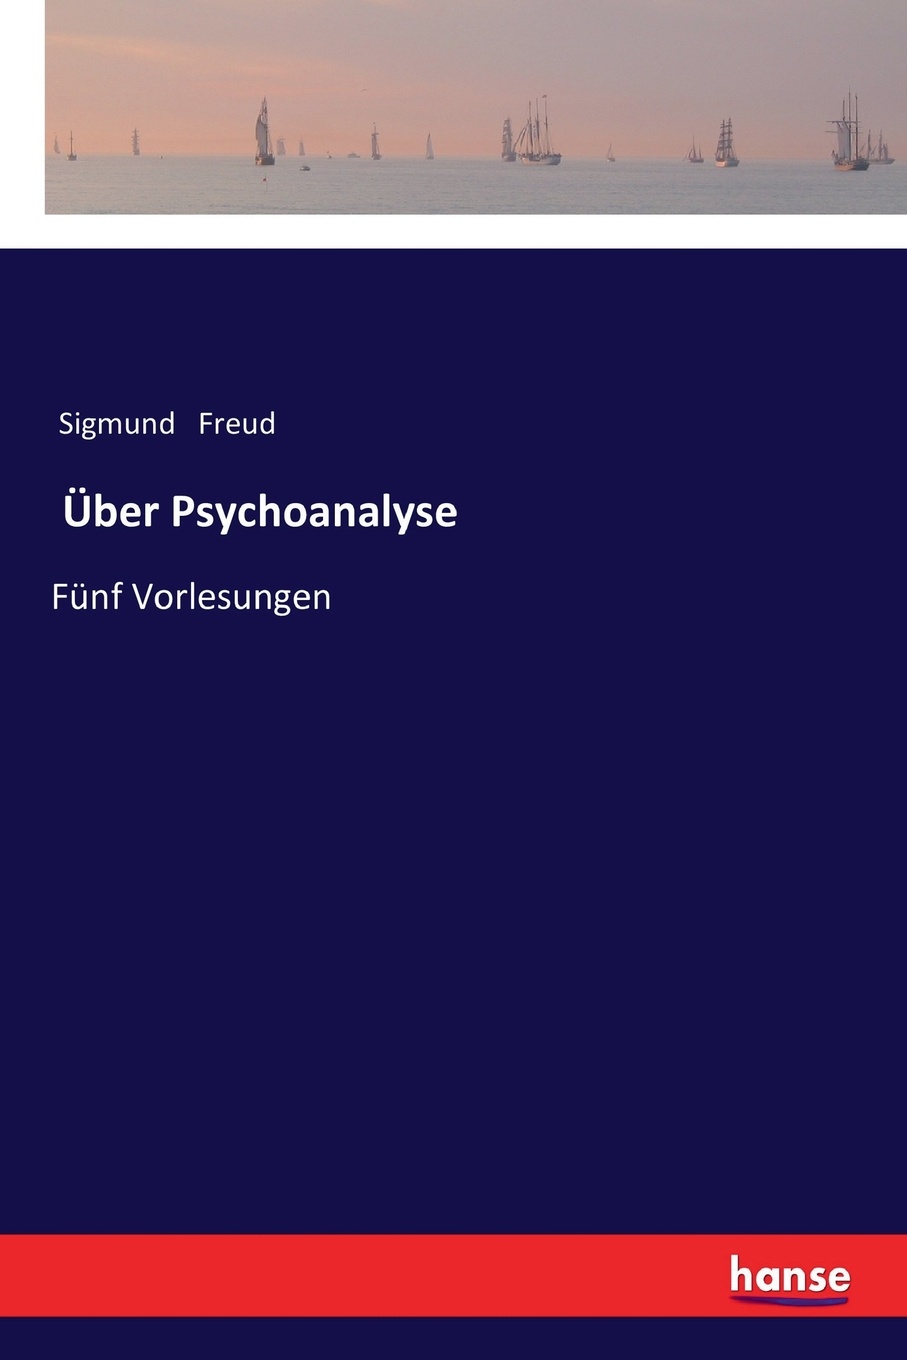 Uber Psychoanalyse